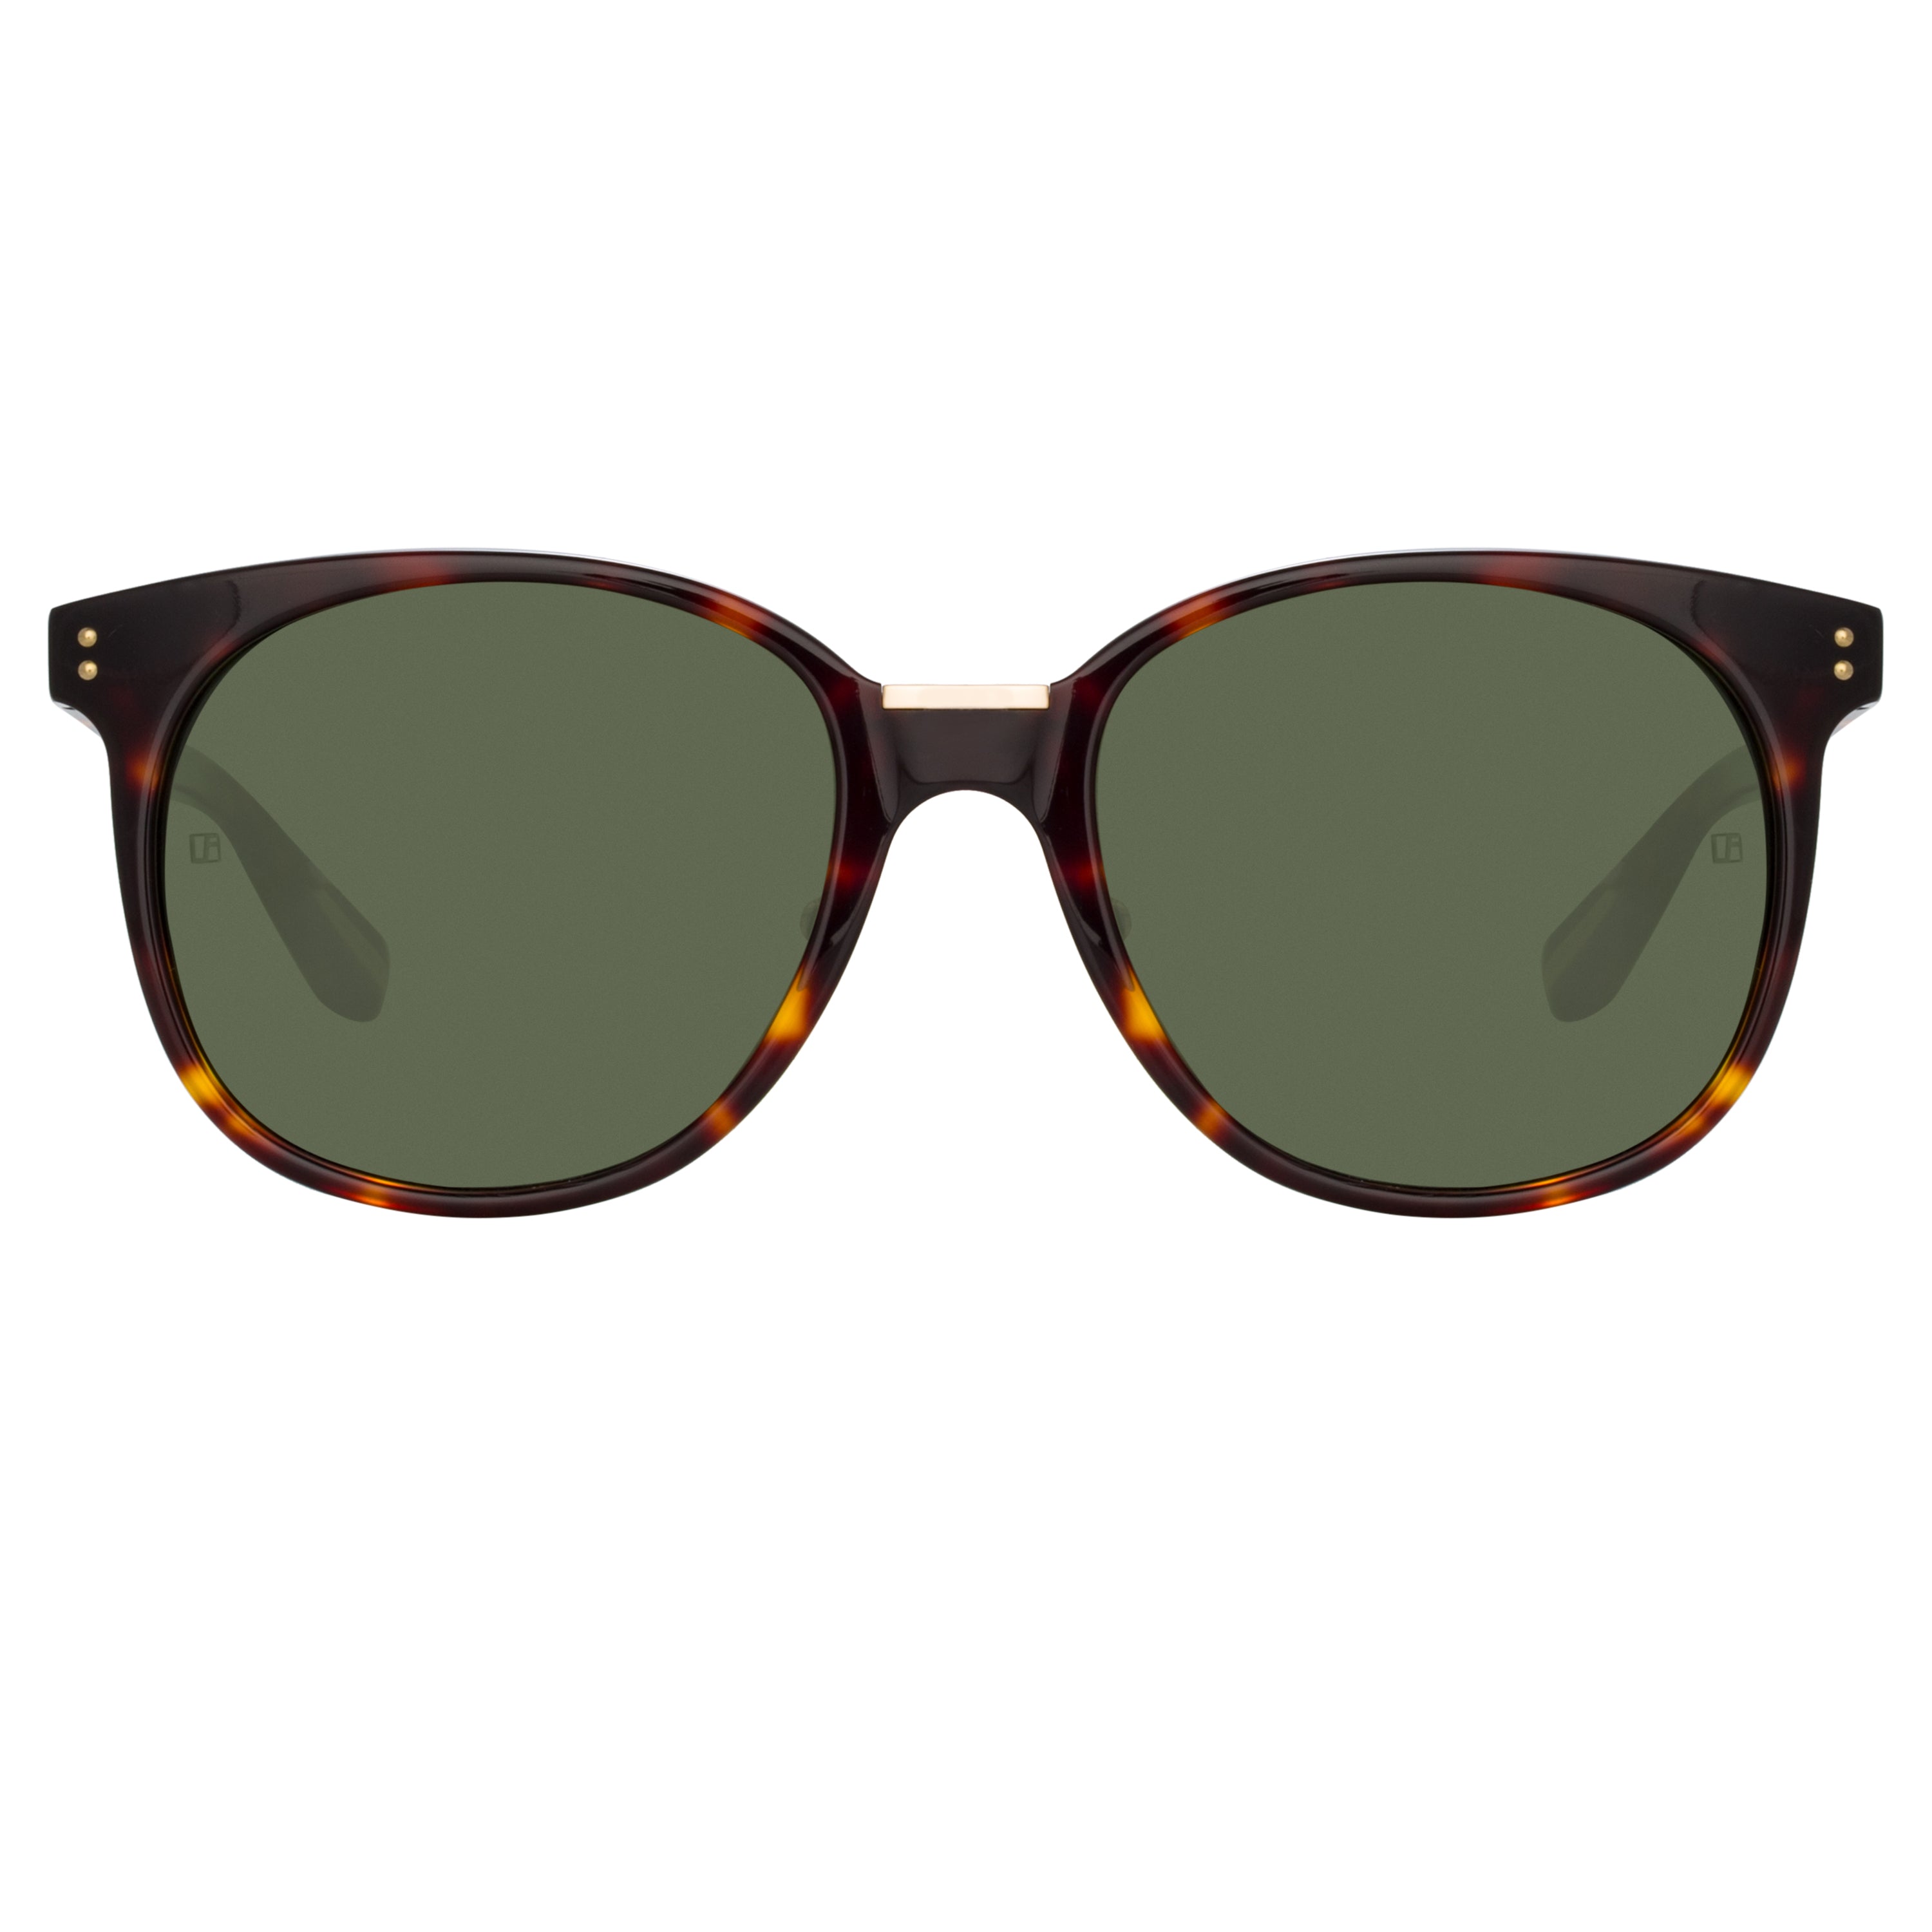 Men’s Palla D-Frame Sunglasses in Tortoiseshell